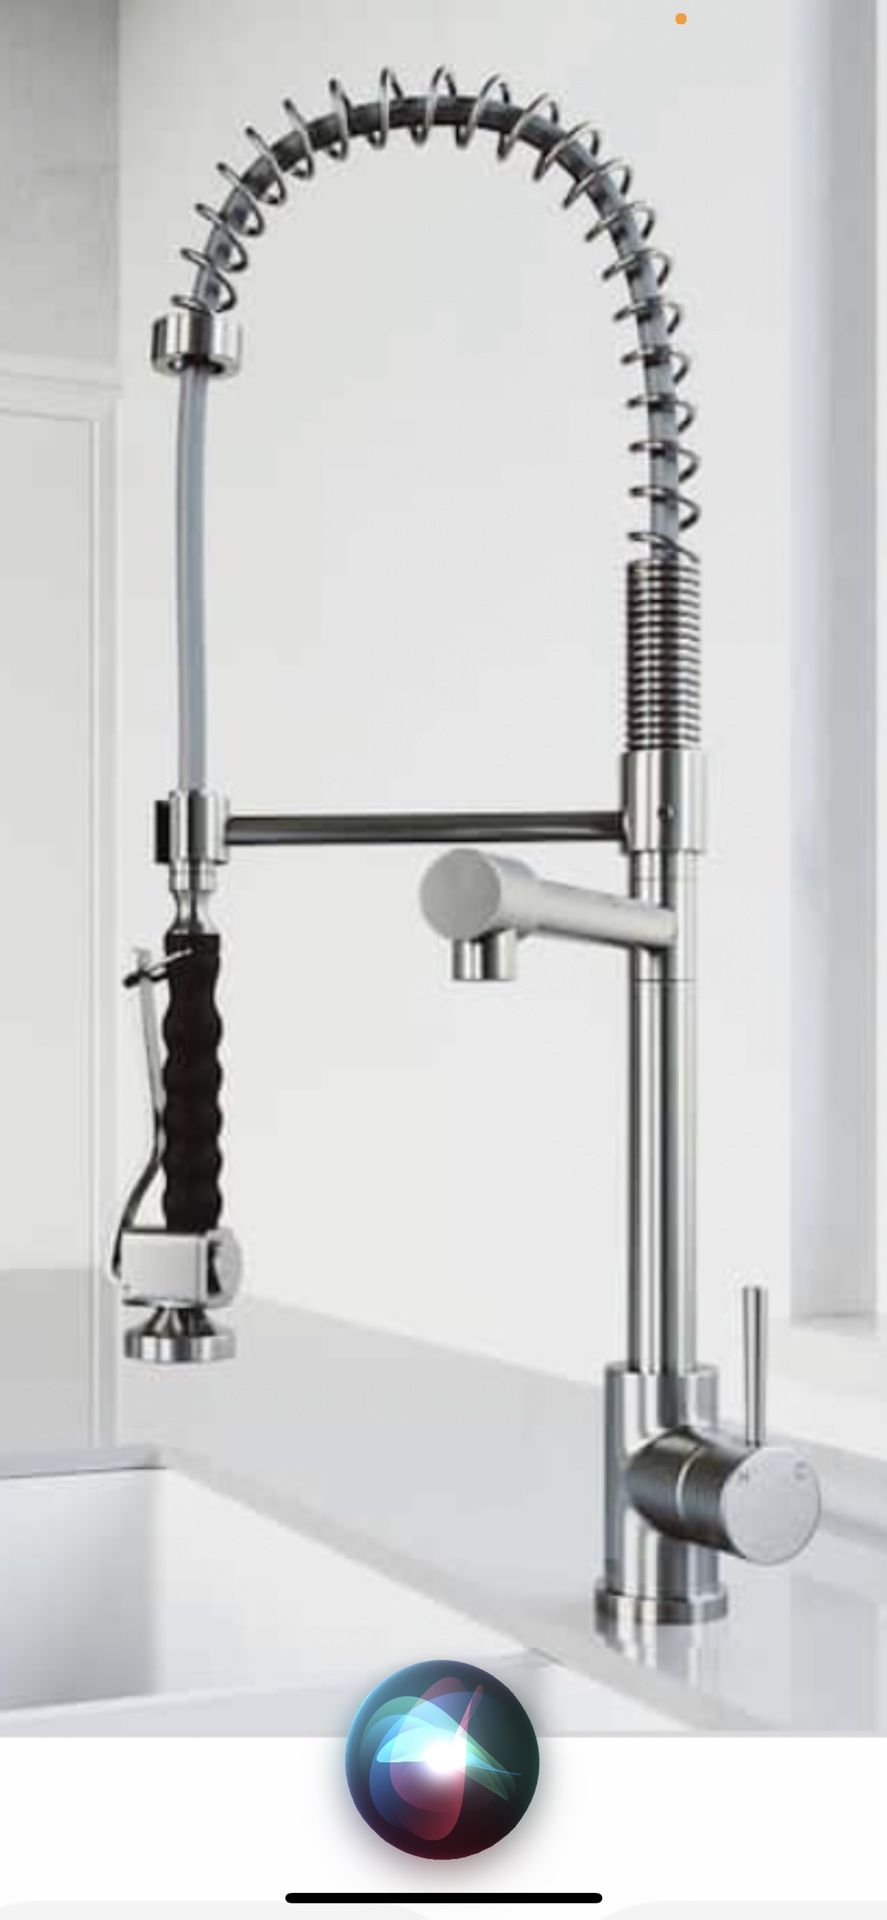 VIGO Zurich Single Handle Pull-Down Sprayer Kitchen Faucet in Stainless Steel (877)